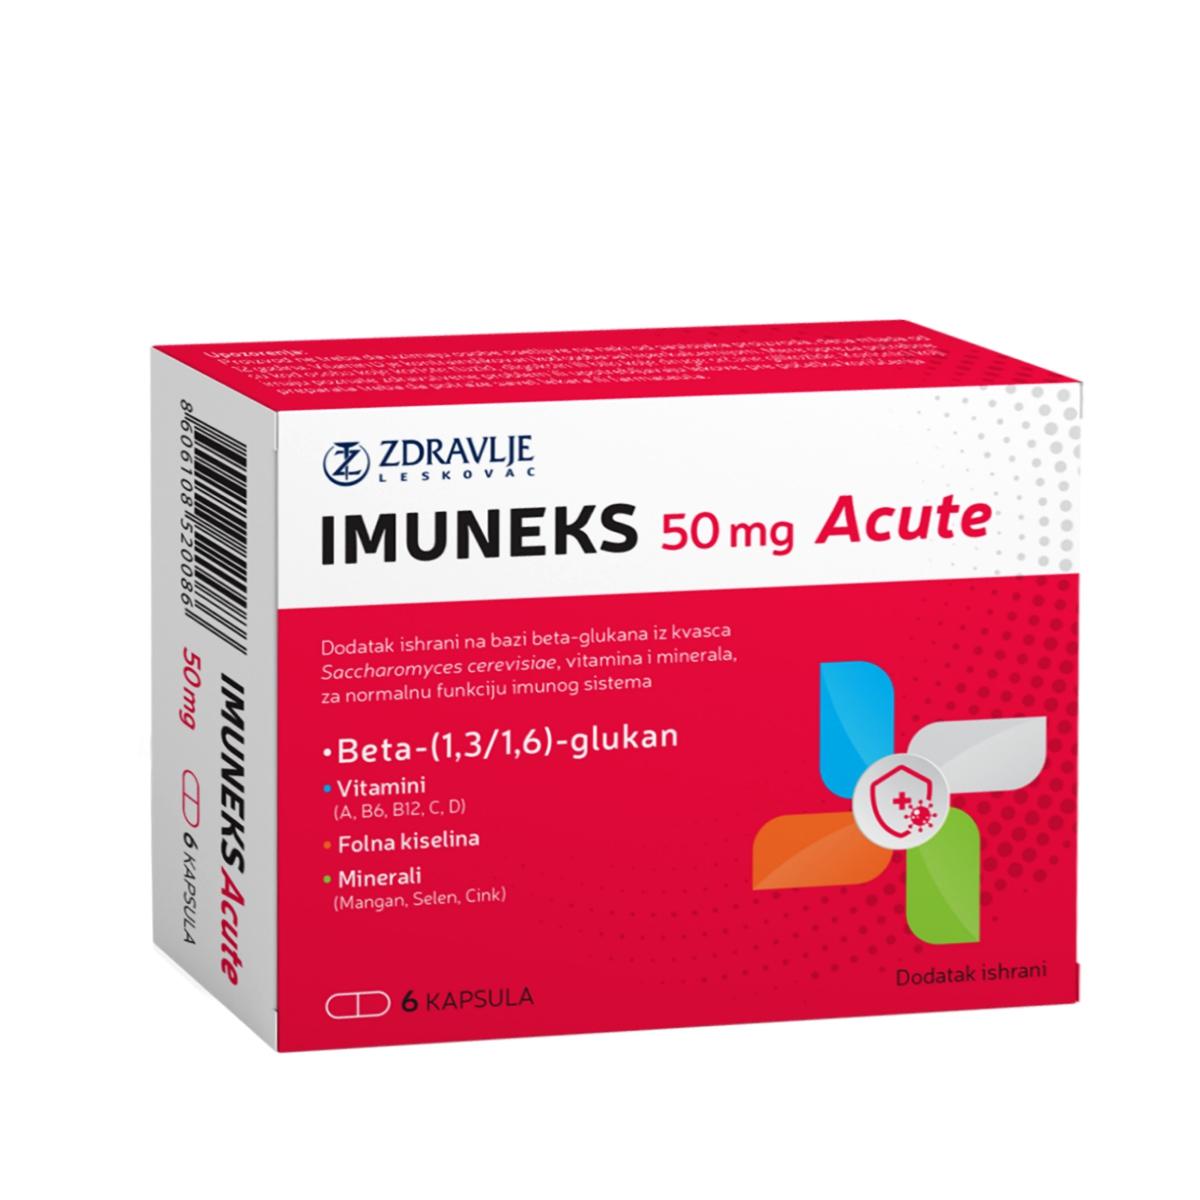 ZDRAVLJE Imuneks Acute 50 mg 6/1